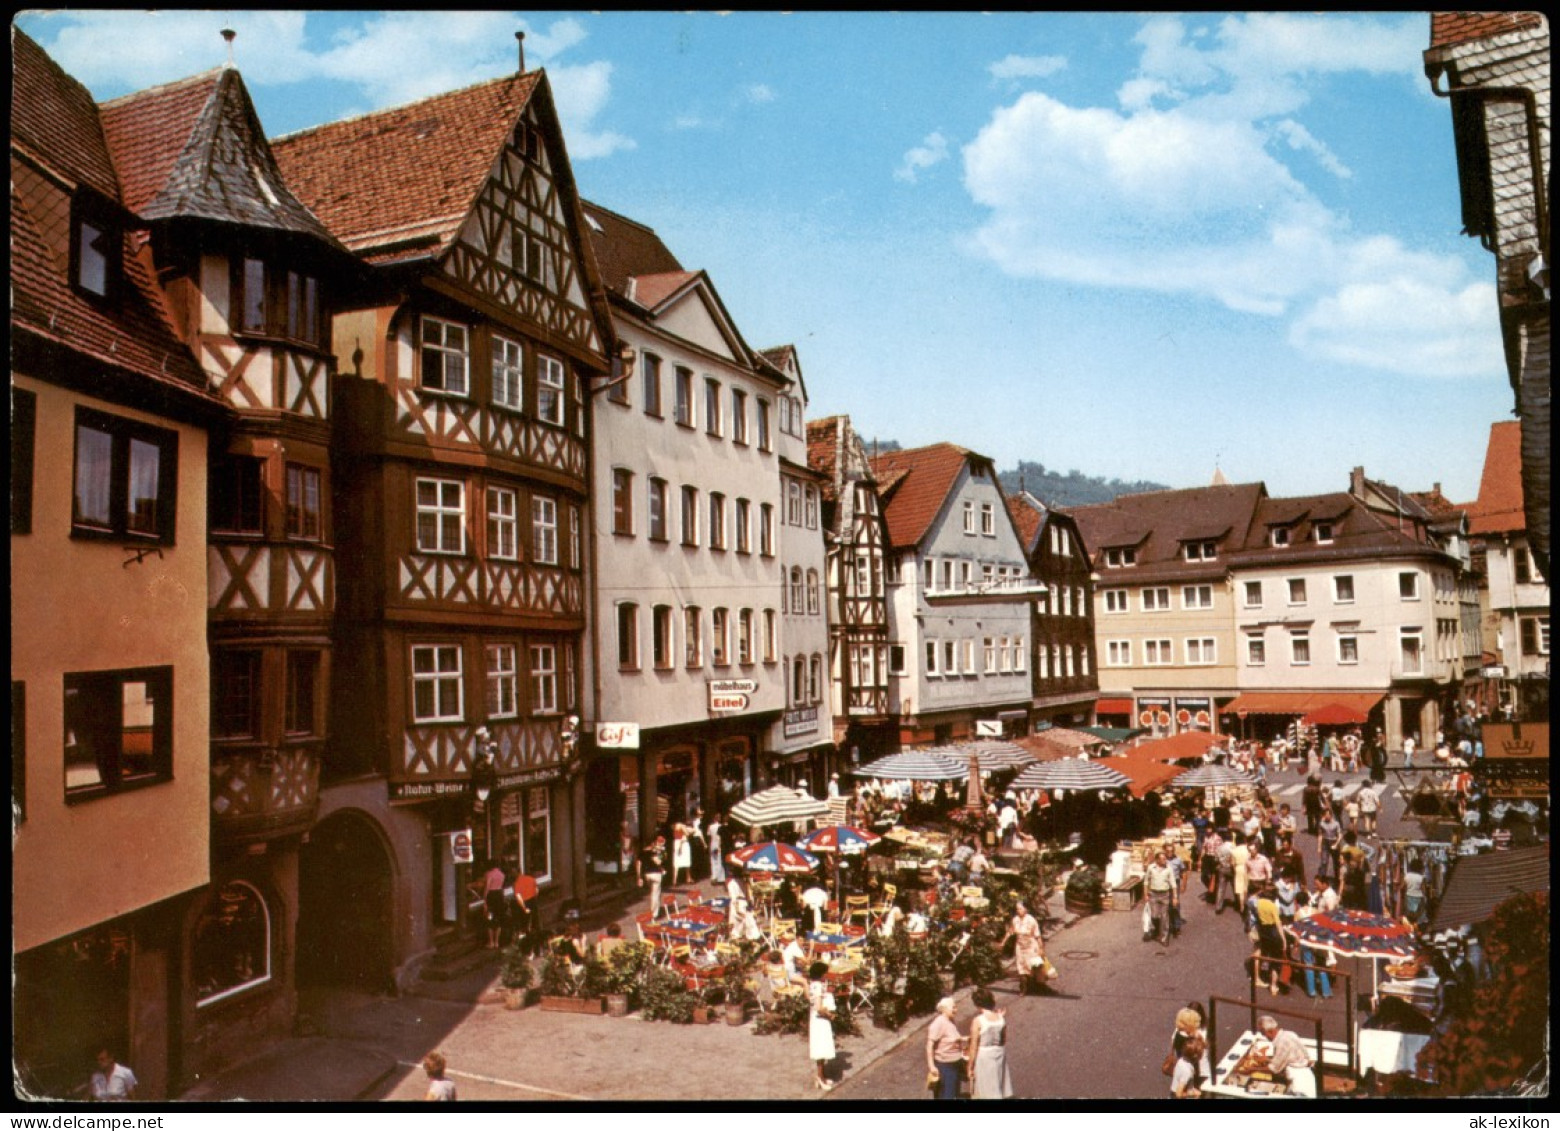 Ansichtskarte Wertheim Marktplatz, Markttreiben 1975 - Wertheim